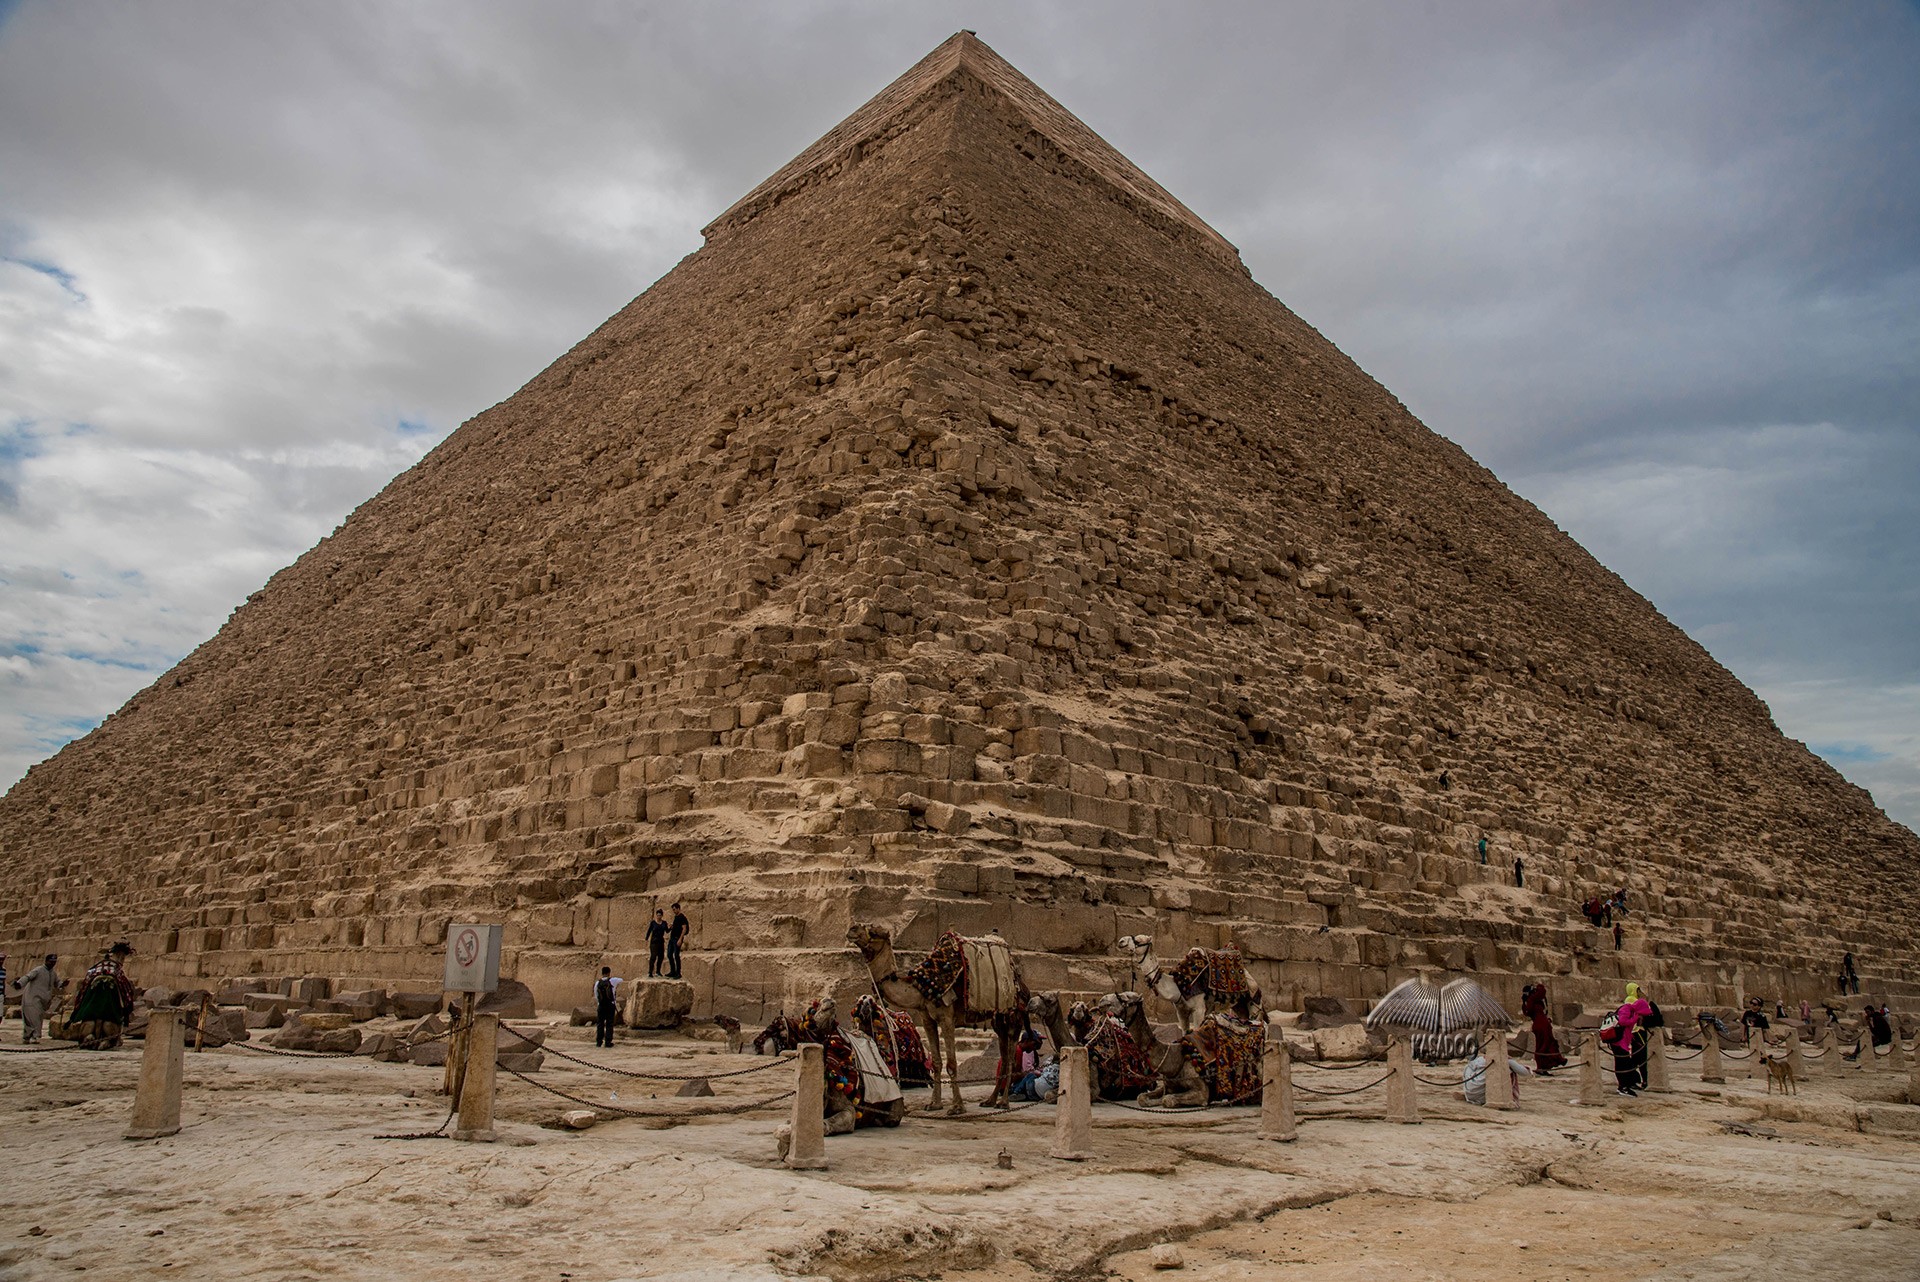 La segunda pirámide más grande del mundo